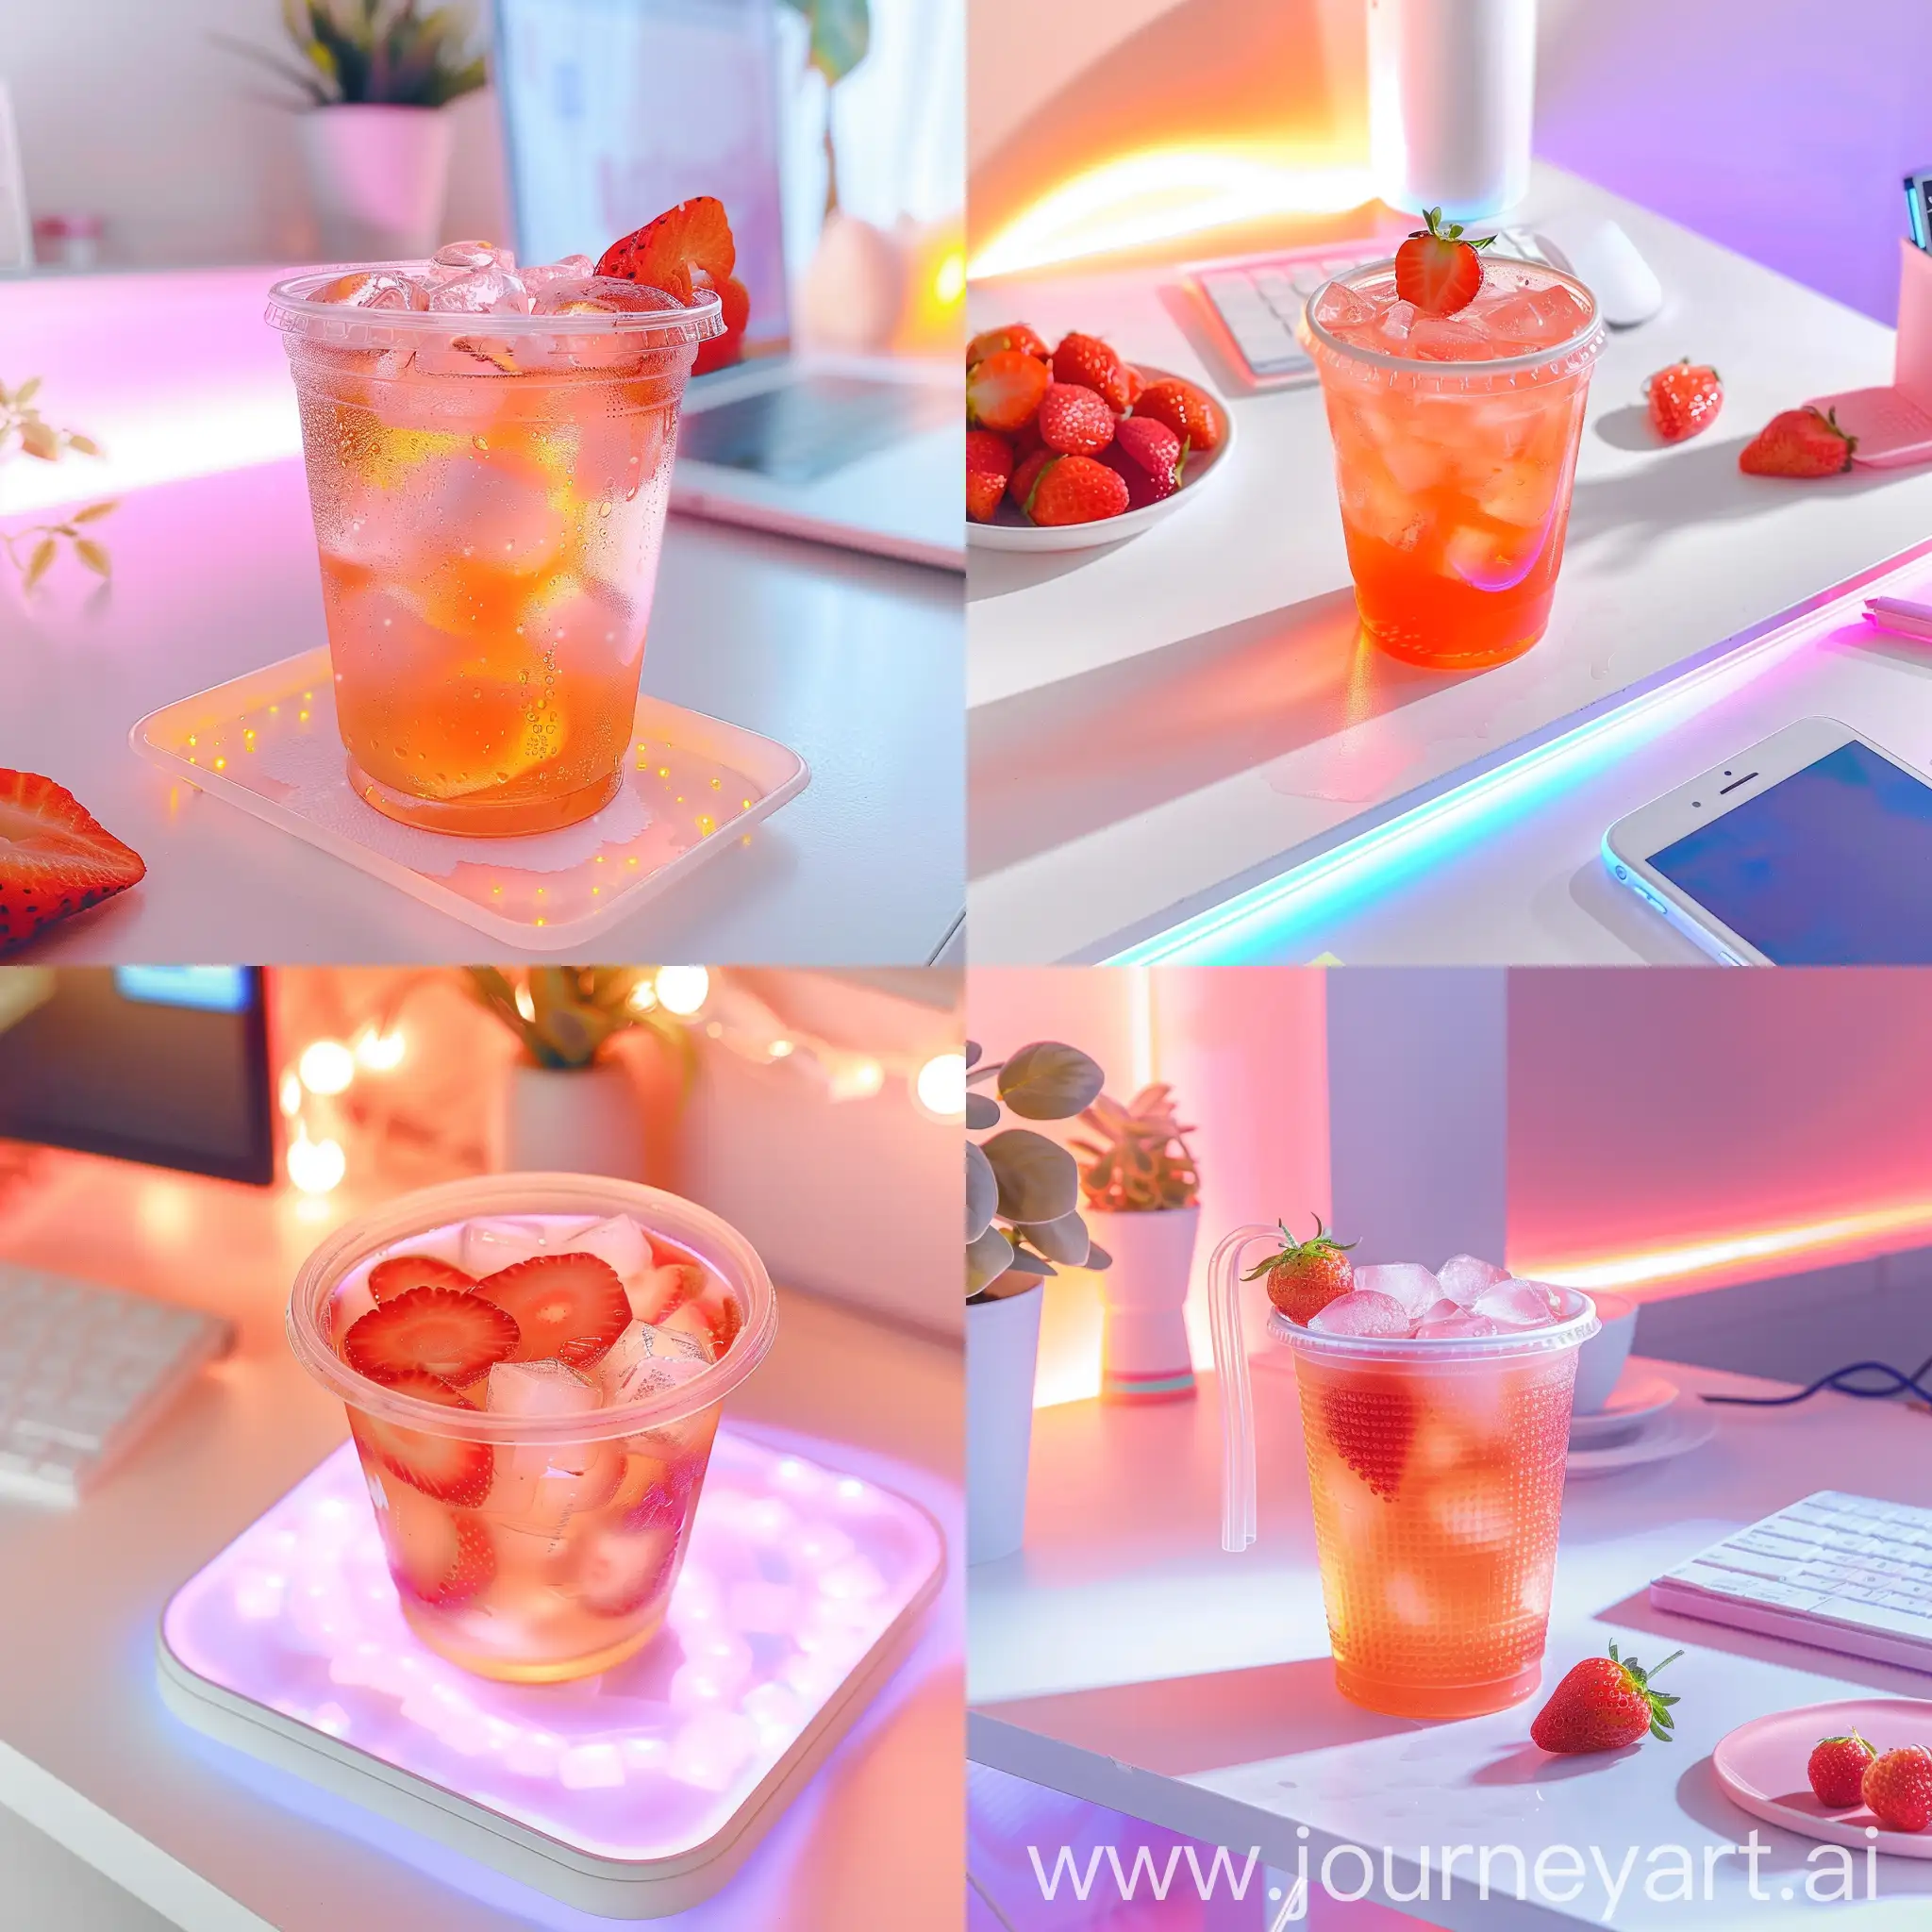 Pastel-Aesthetic-Instagram-Post-Strawberry-Iced-Tea-on-White-Desk